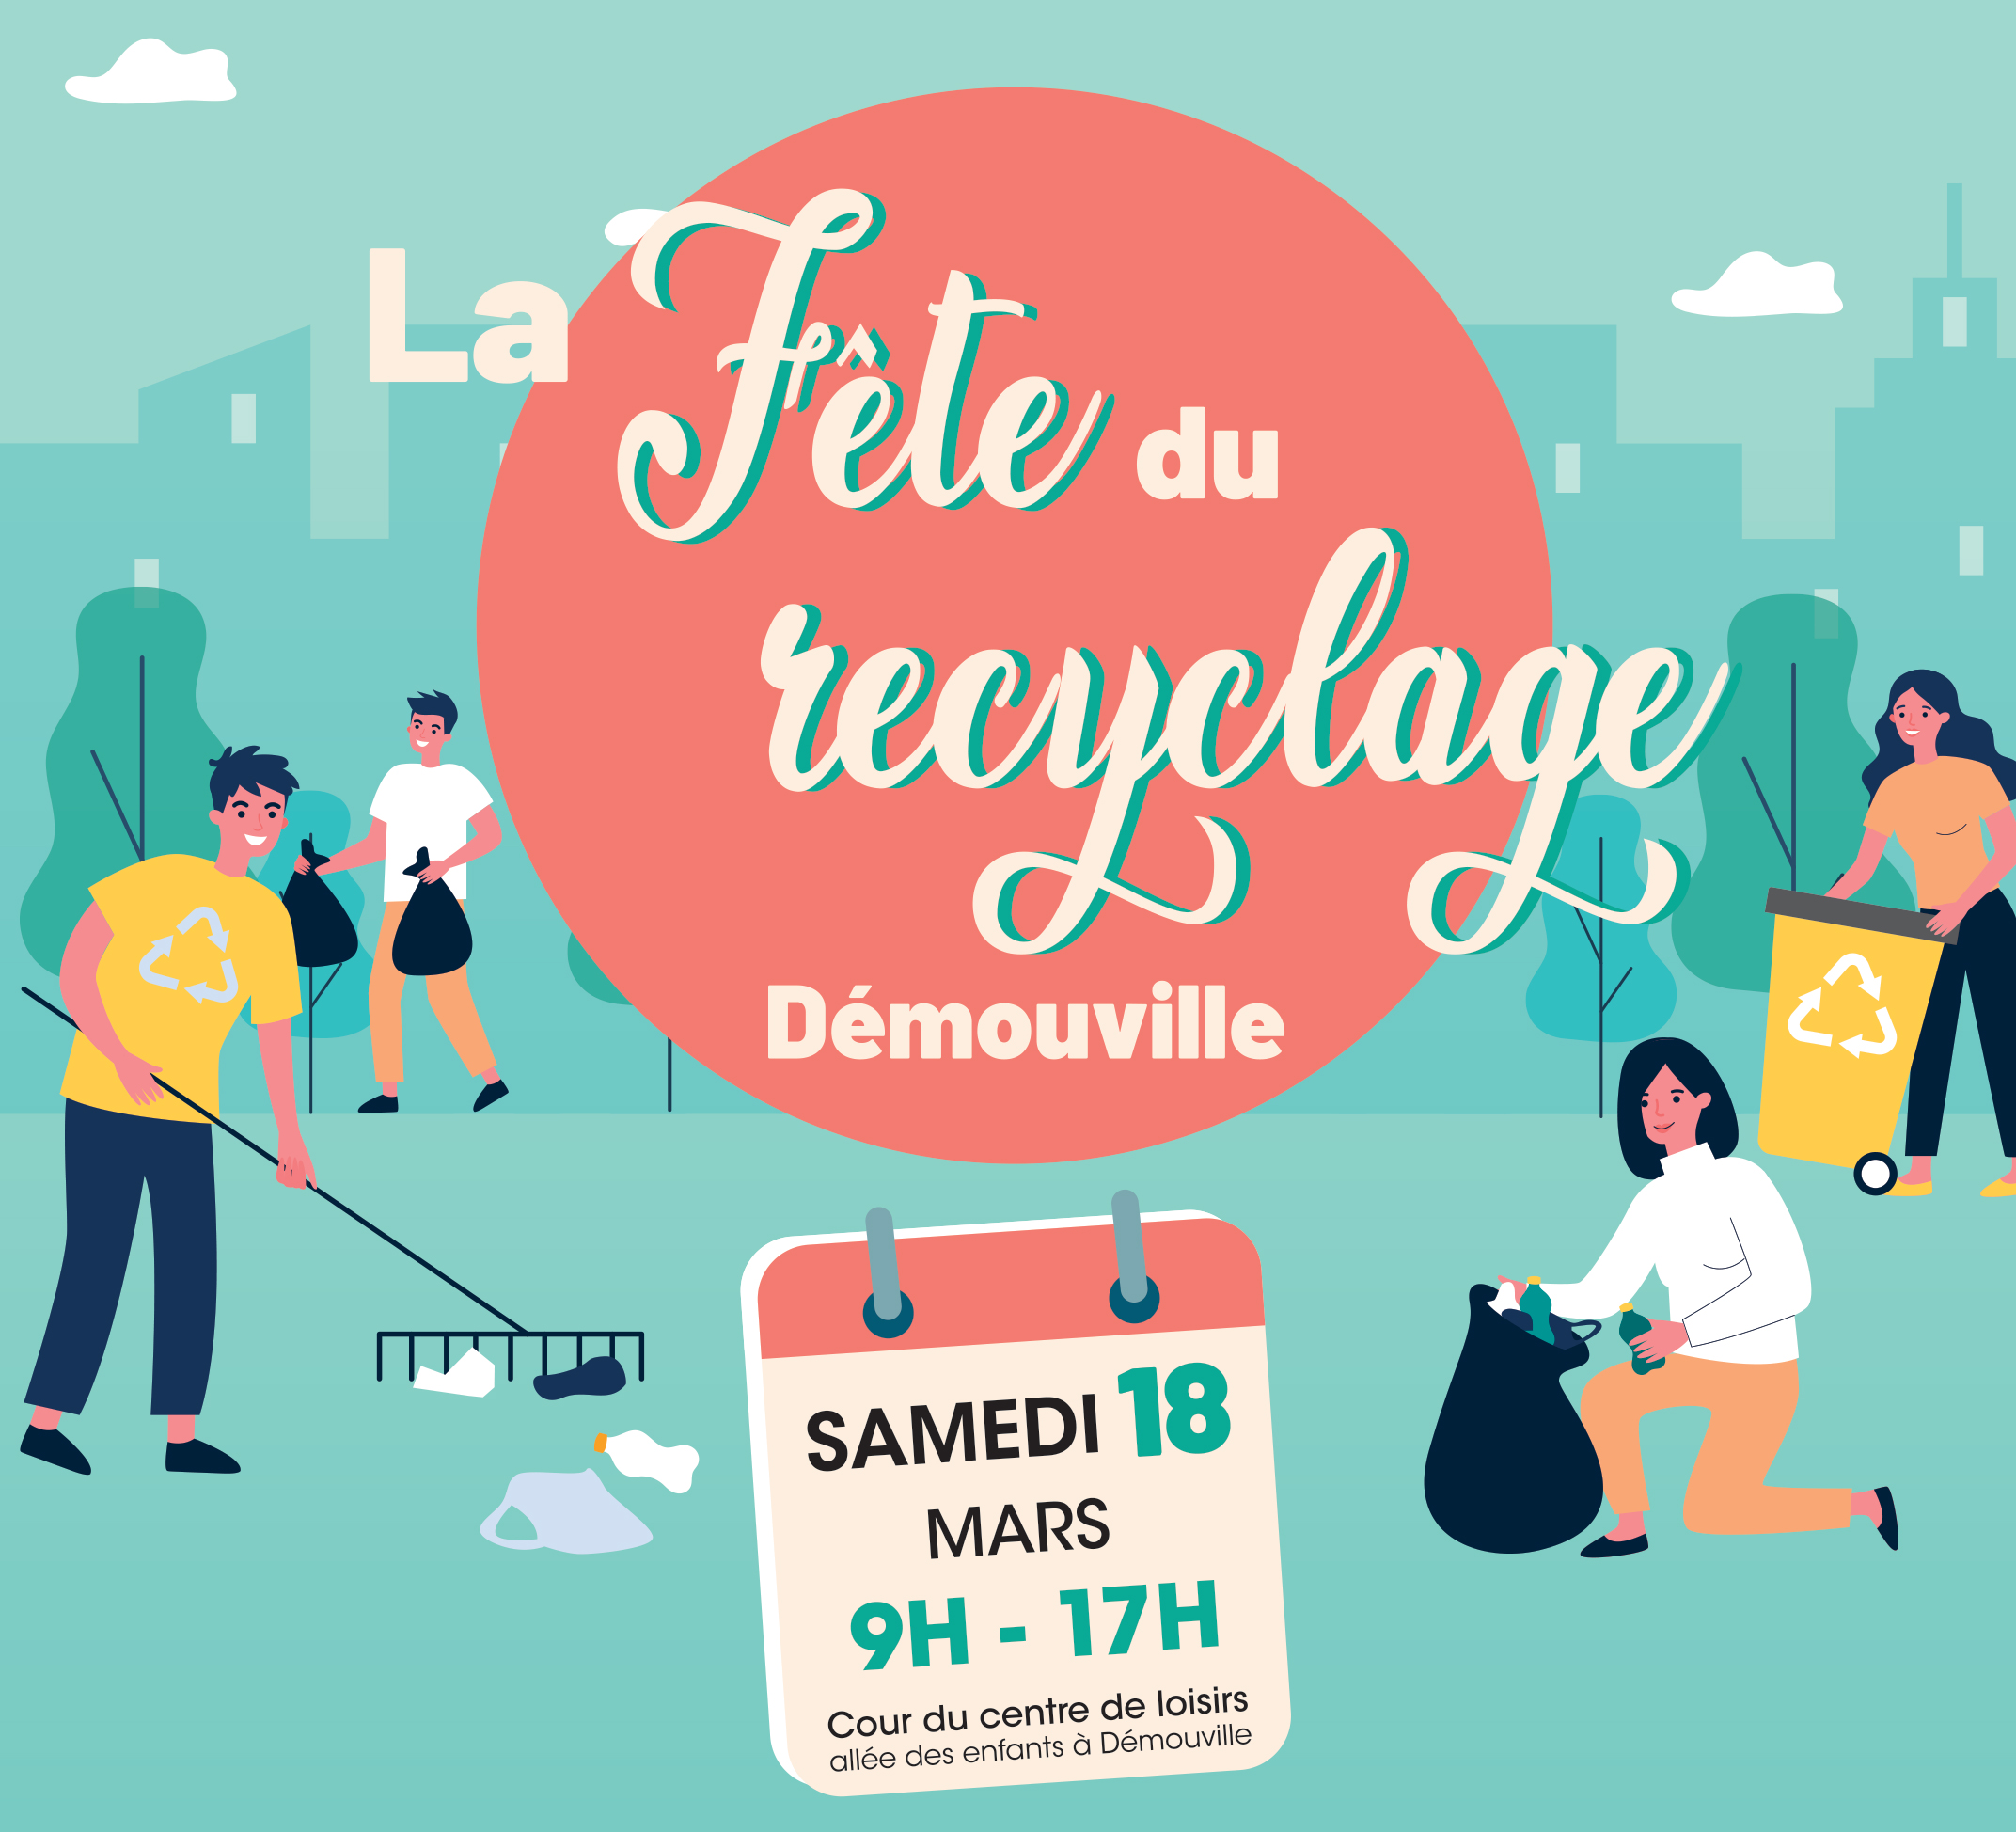 Journée du recyclage Démouville